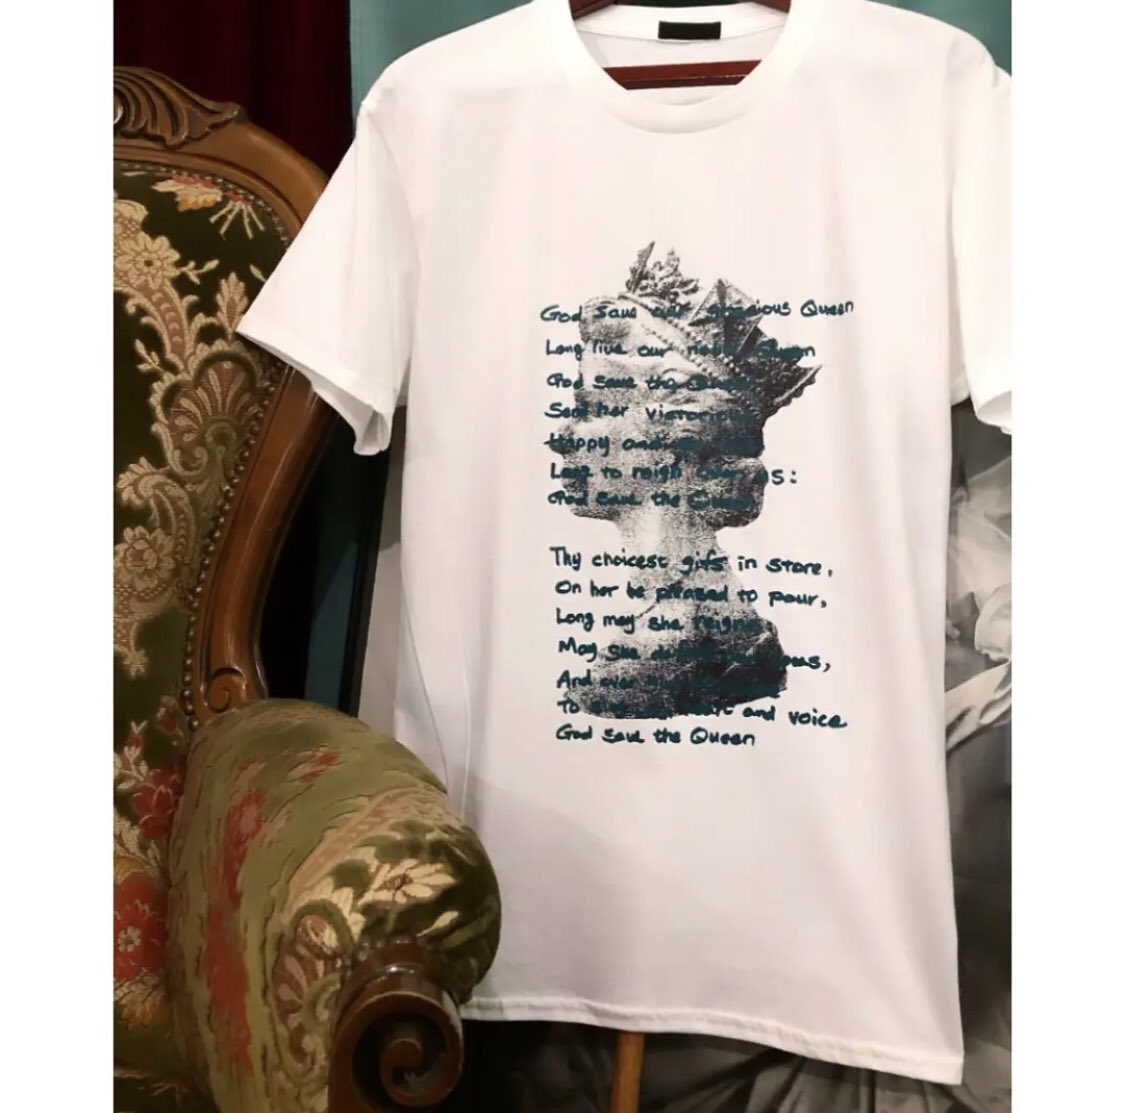 Queen T-shirts 〈 British project 〉

昨年の Queen  Elizabeth の追悼の意を込めまして英国にちなんだ昨品

Short sleeve White (L)〜(XXL)のみと、なりました。
お気に召して頂いていたお客様は是非ご覧くださいませ。

bernivinyl.shopselect.net

#england
#queen
#elizabeth 
#tshirts
#fashion